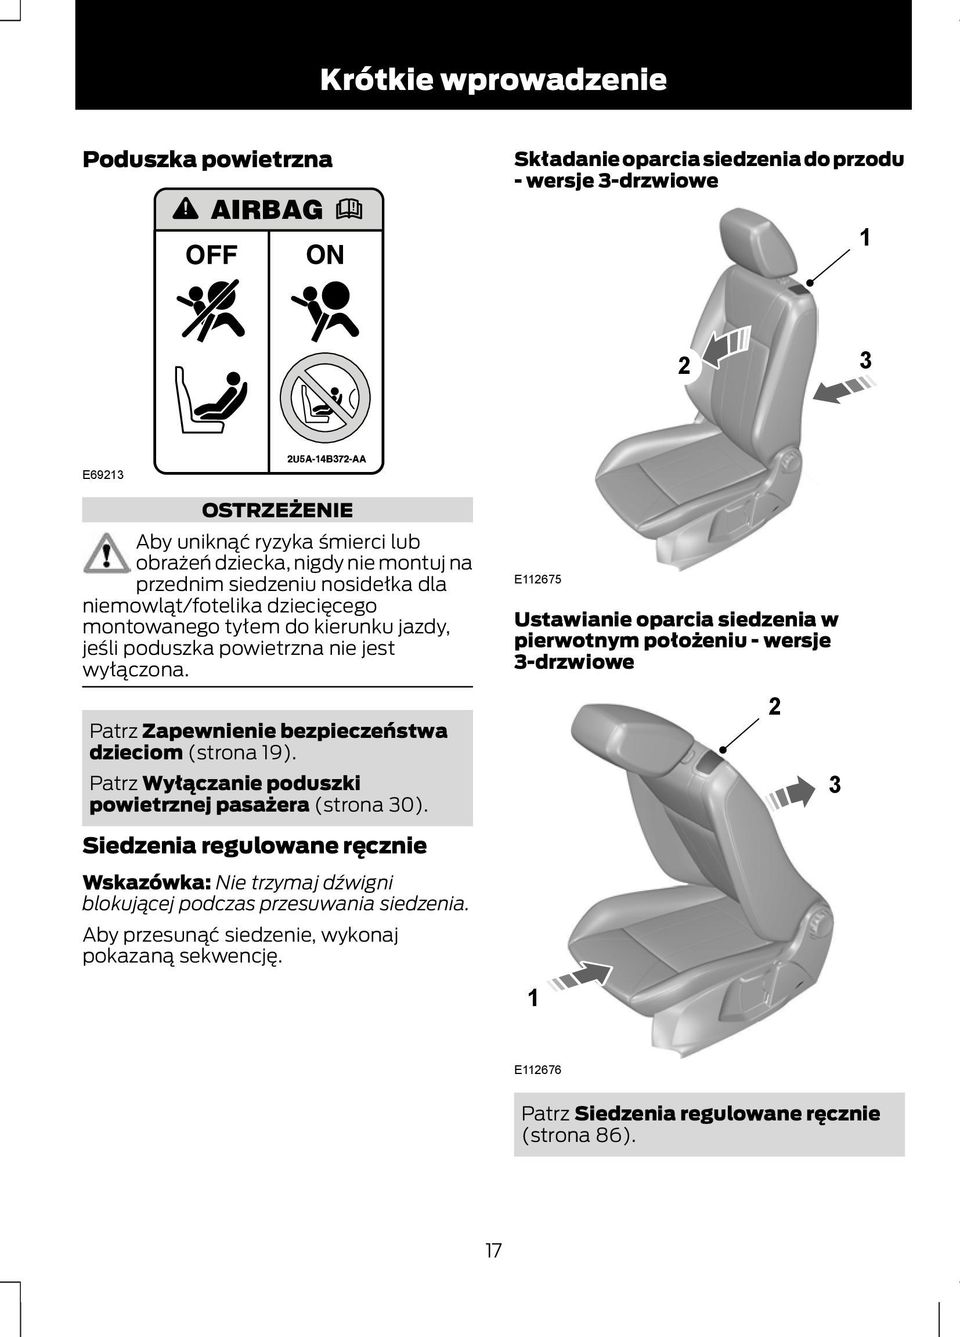 Patrz Zapewnienie bezpieczeństwa dzieciom (strona 19). Patrz Wyłączanie poduszki powietrznej pasażera (strona 30).